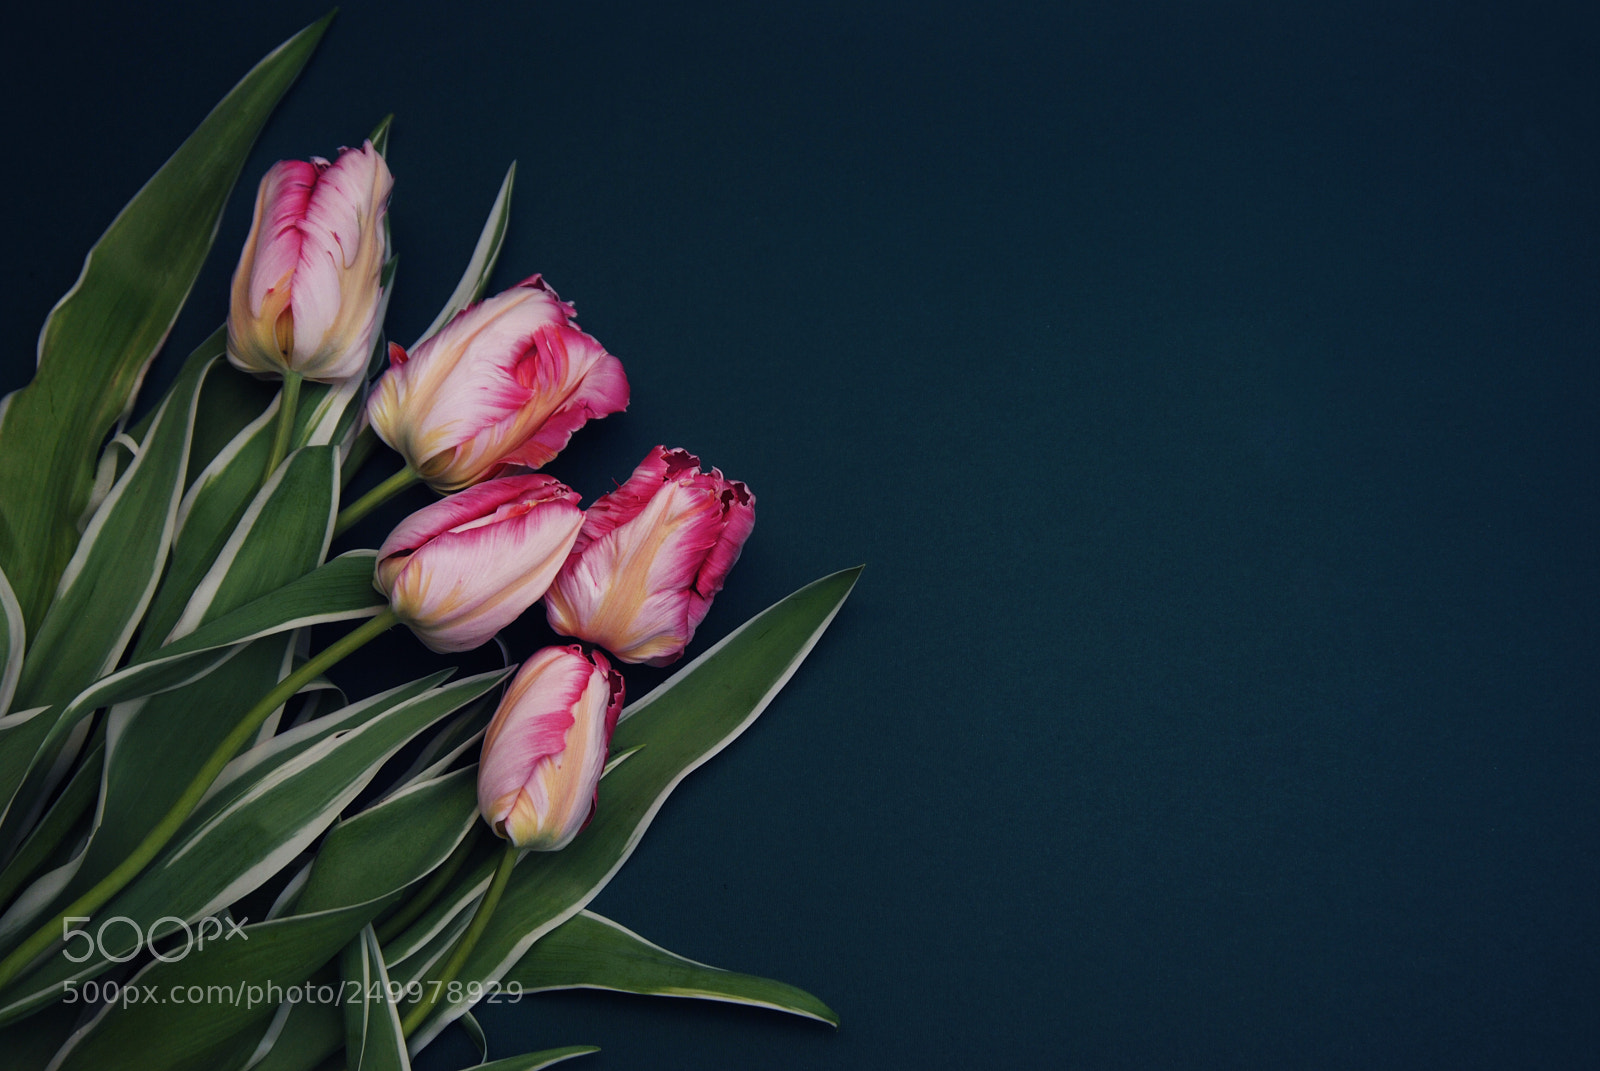 Nikon D80 sample photo. Pink spring parrot tulip photography